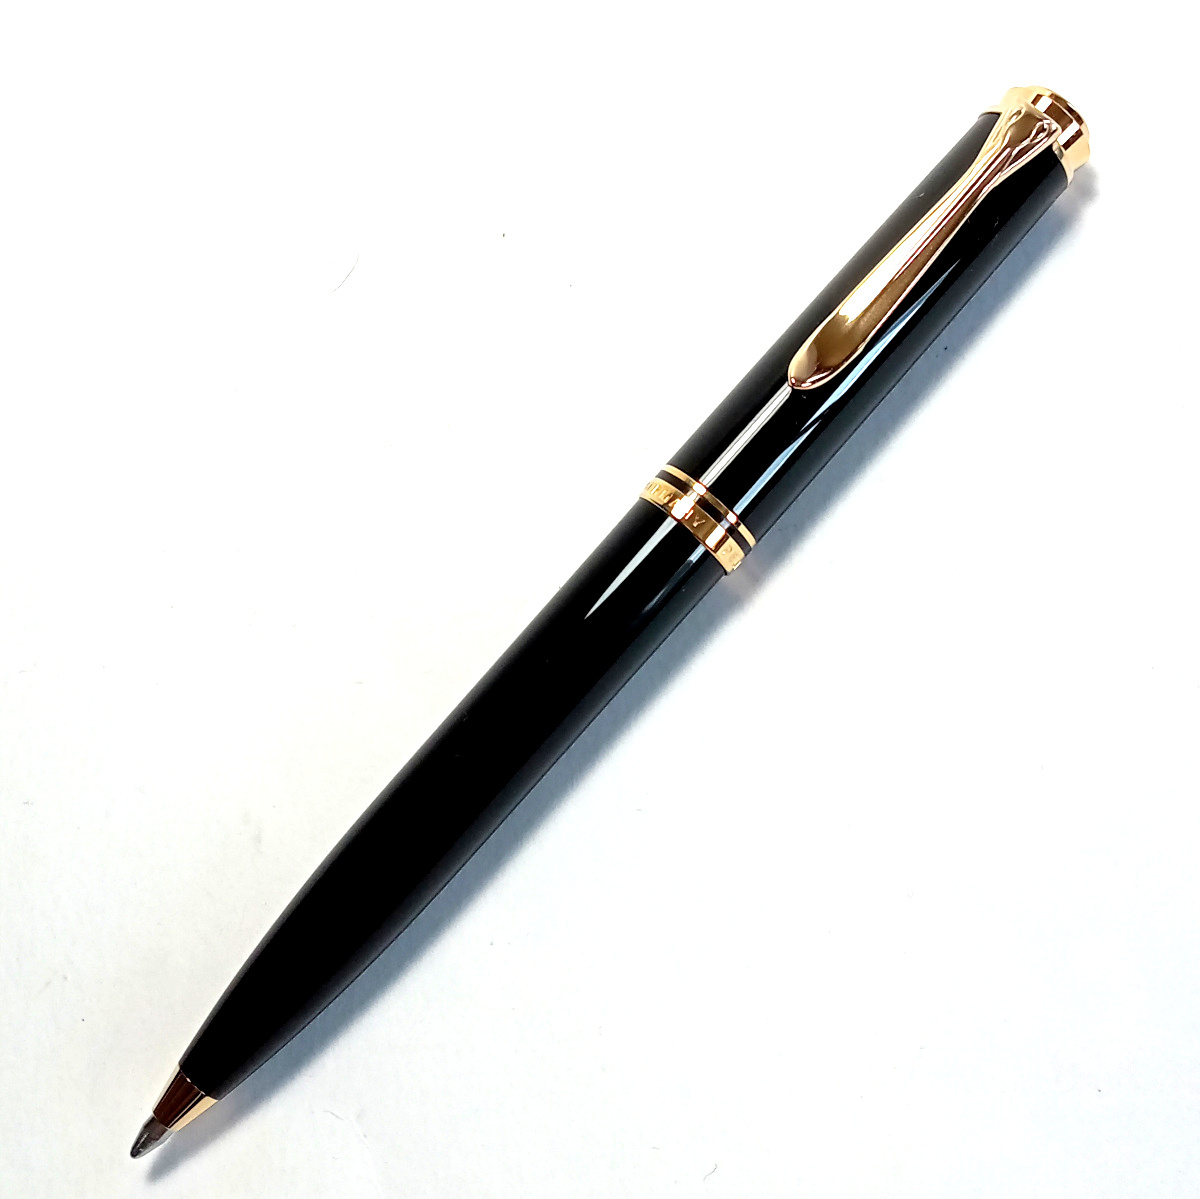 [plkb3]Pelikan пеликан шариковая ручка Hsu be полоса K600 черный × Gold чёрный кручение тип Souveran обычная цена 41,800 иен 